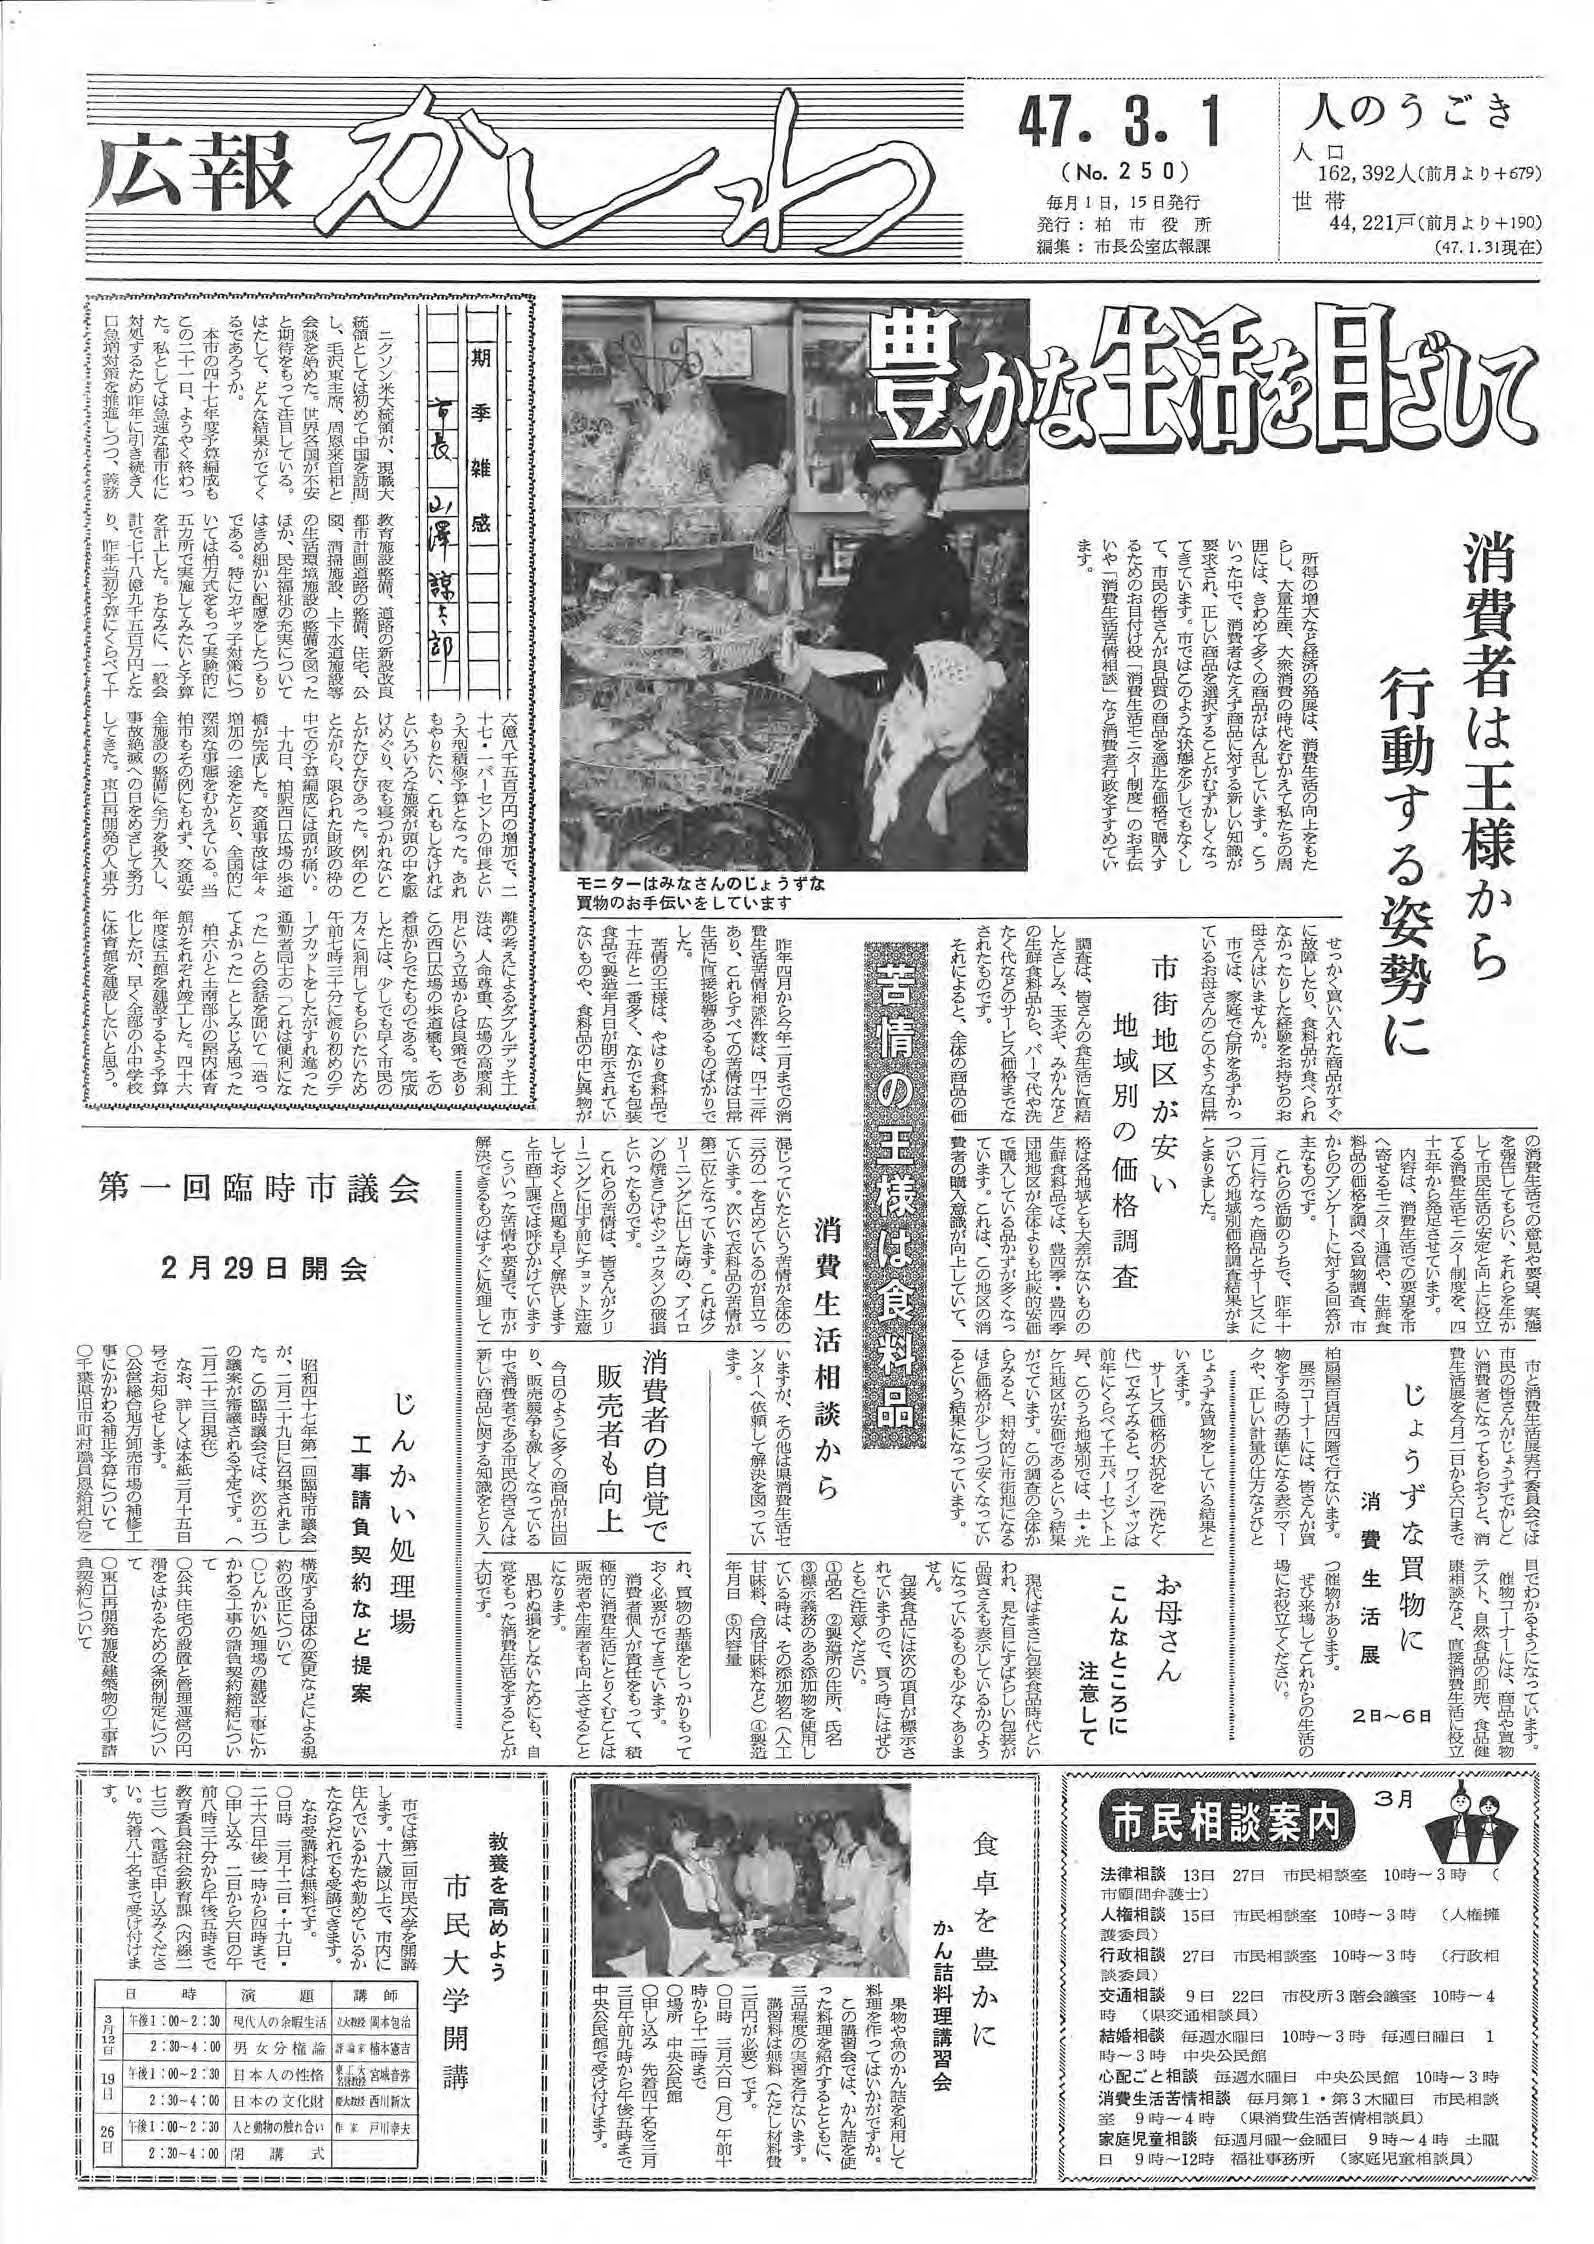 広報かしわ　昭和47年3月1日発行　250号